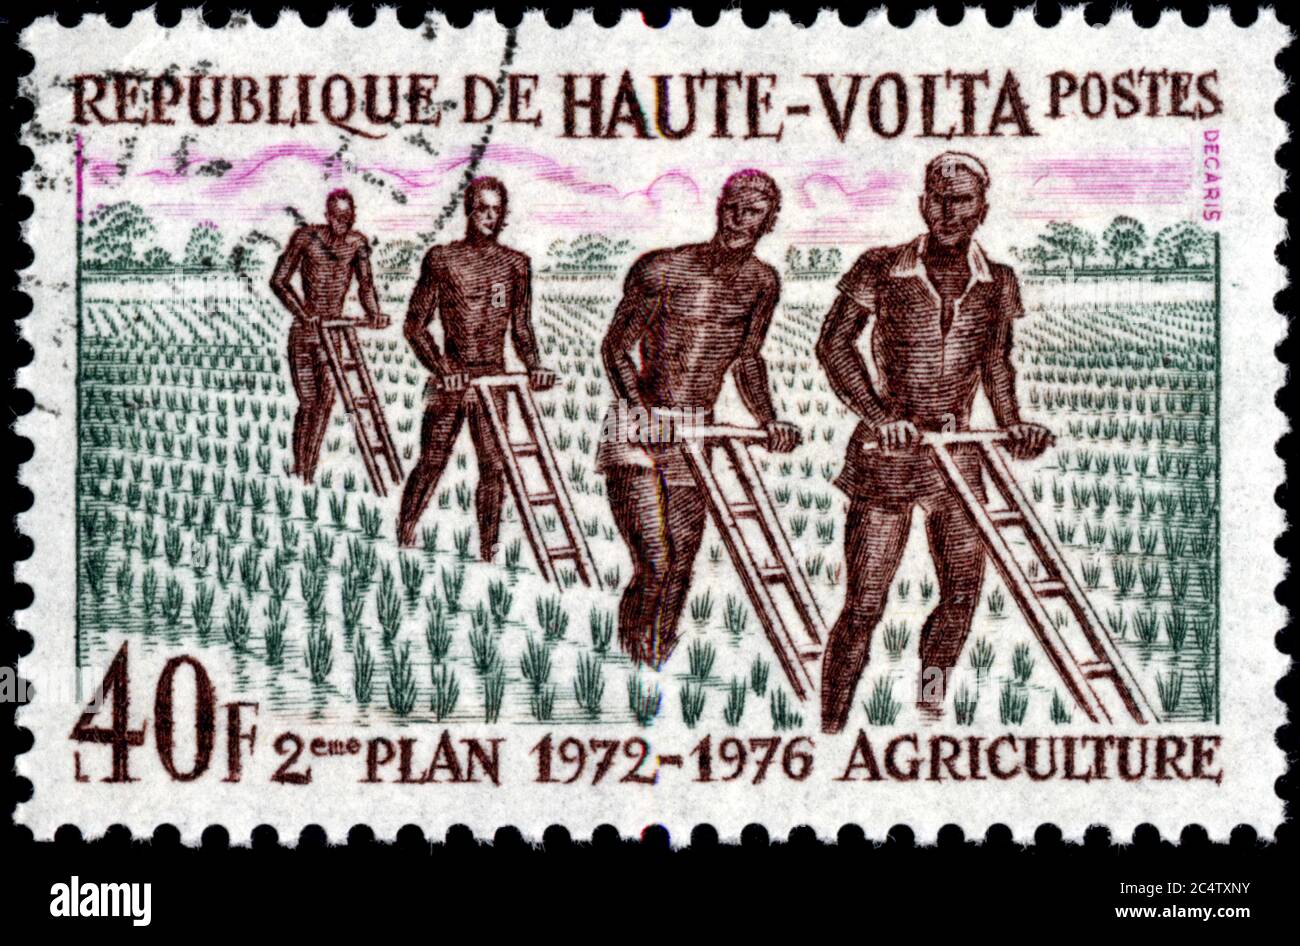 Timbre oblitéré 2eme piano 1972-1976 agricoltura. 40 F. République de Haute-volta.Postes Foto Stock